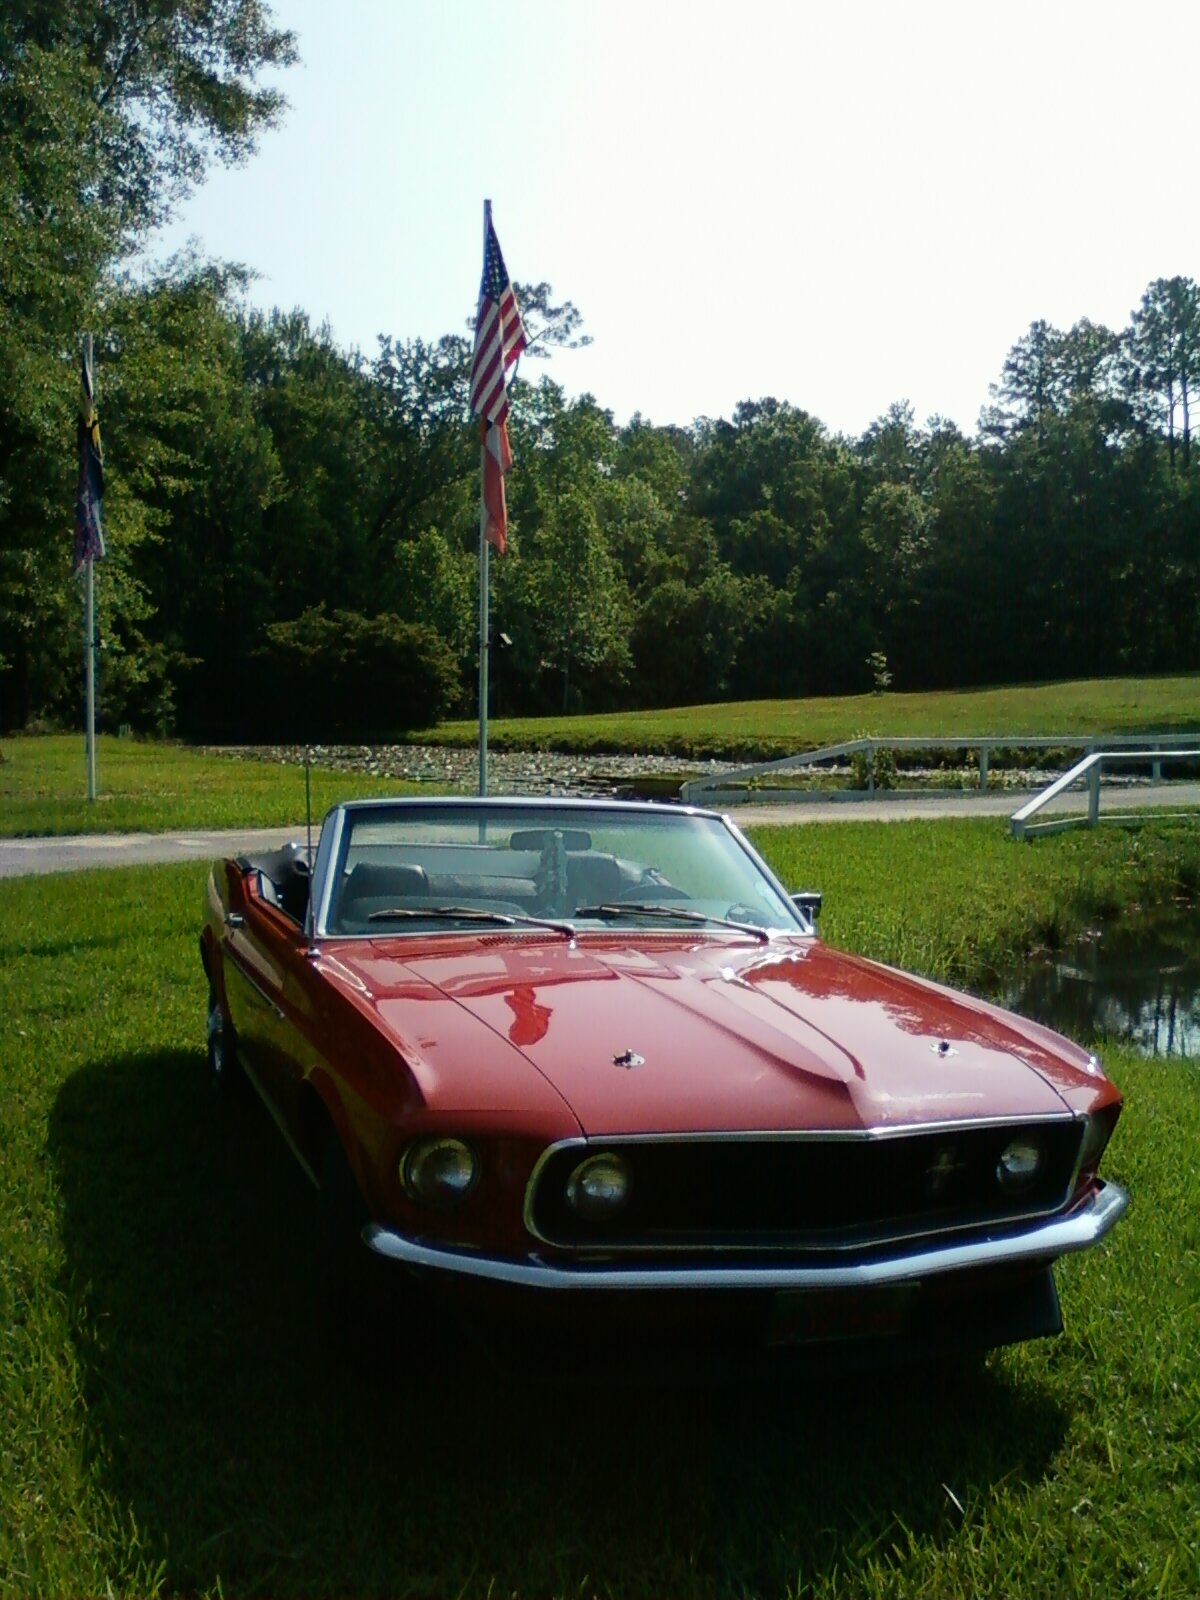 69 Mustang at flag pole.jpg